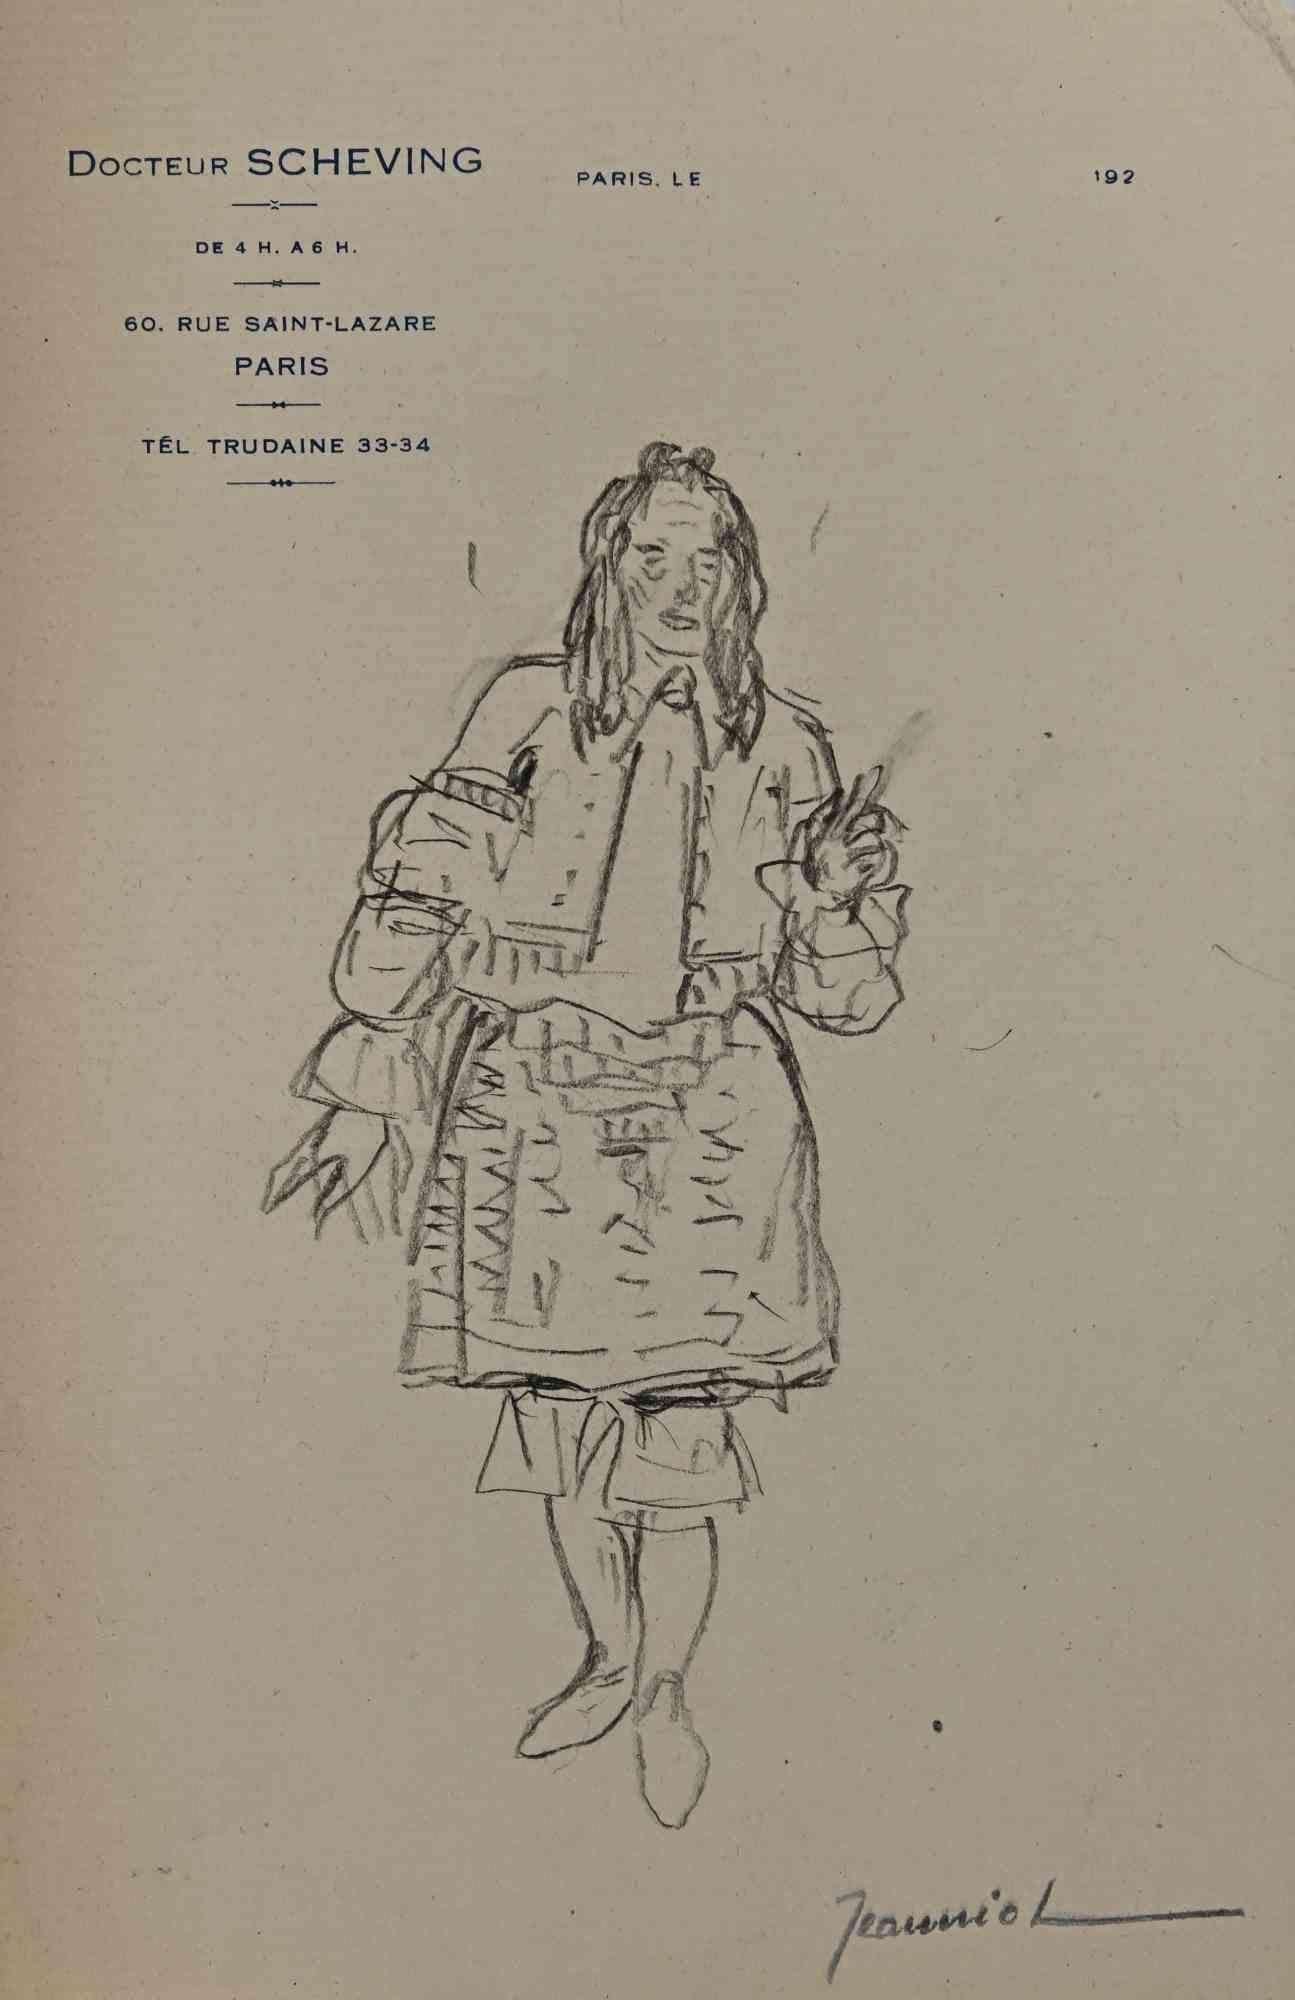 Mann im Kostüm ist eine Originalzeichnung auf Papier des Malers Pierre Georges Jeanniot (1848-1934).

Zeichnen mit Bleistift.

Handsigniert auf der Unterseite.

Guter Zustand, außer dass er gealtert ist.

Das Kunstwerk wird durch geschickte und